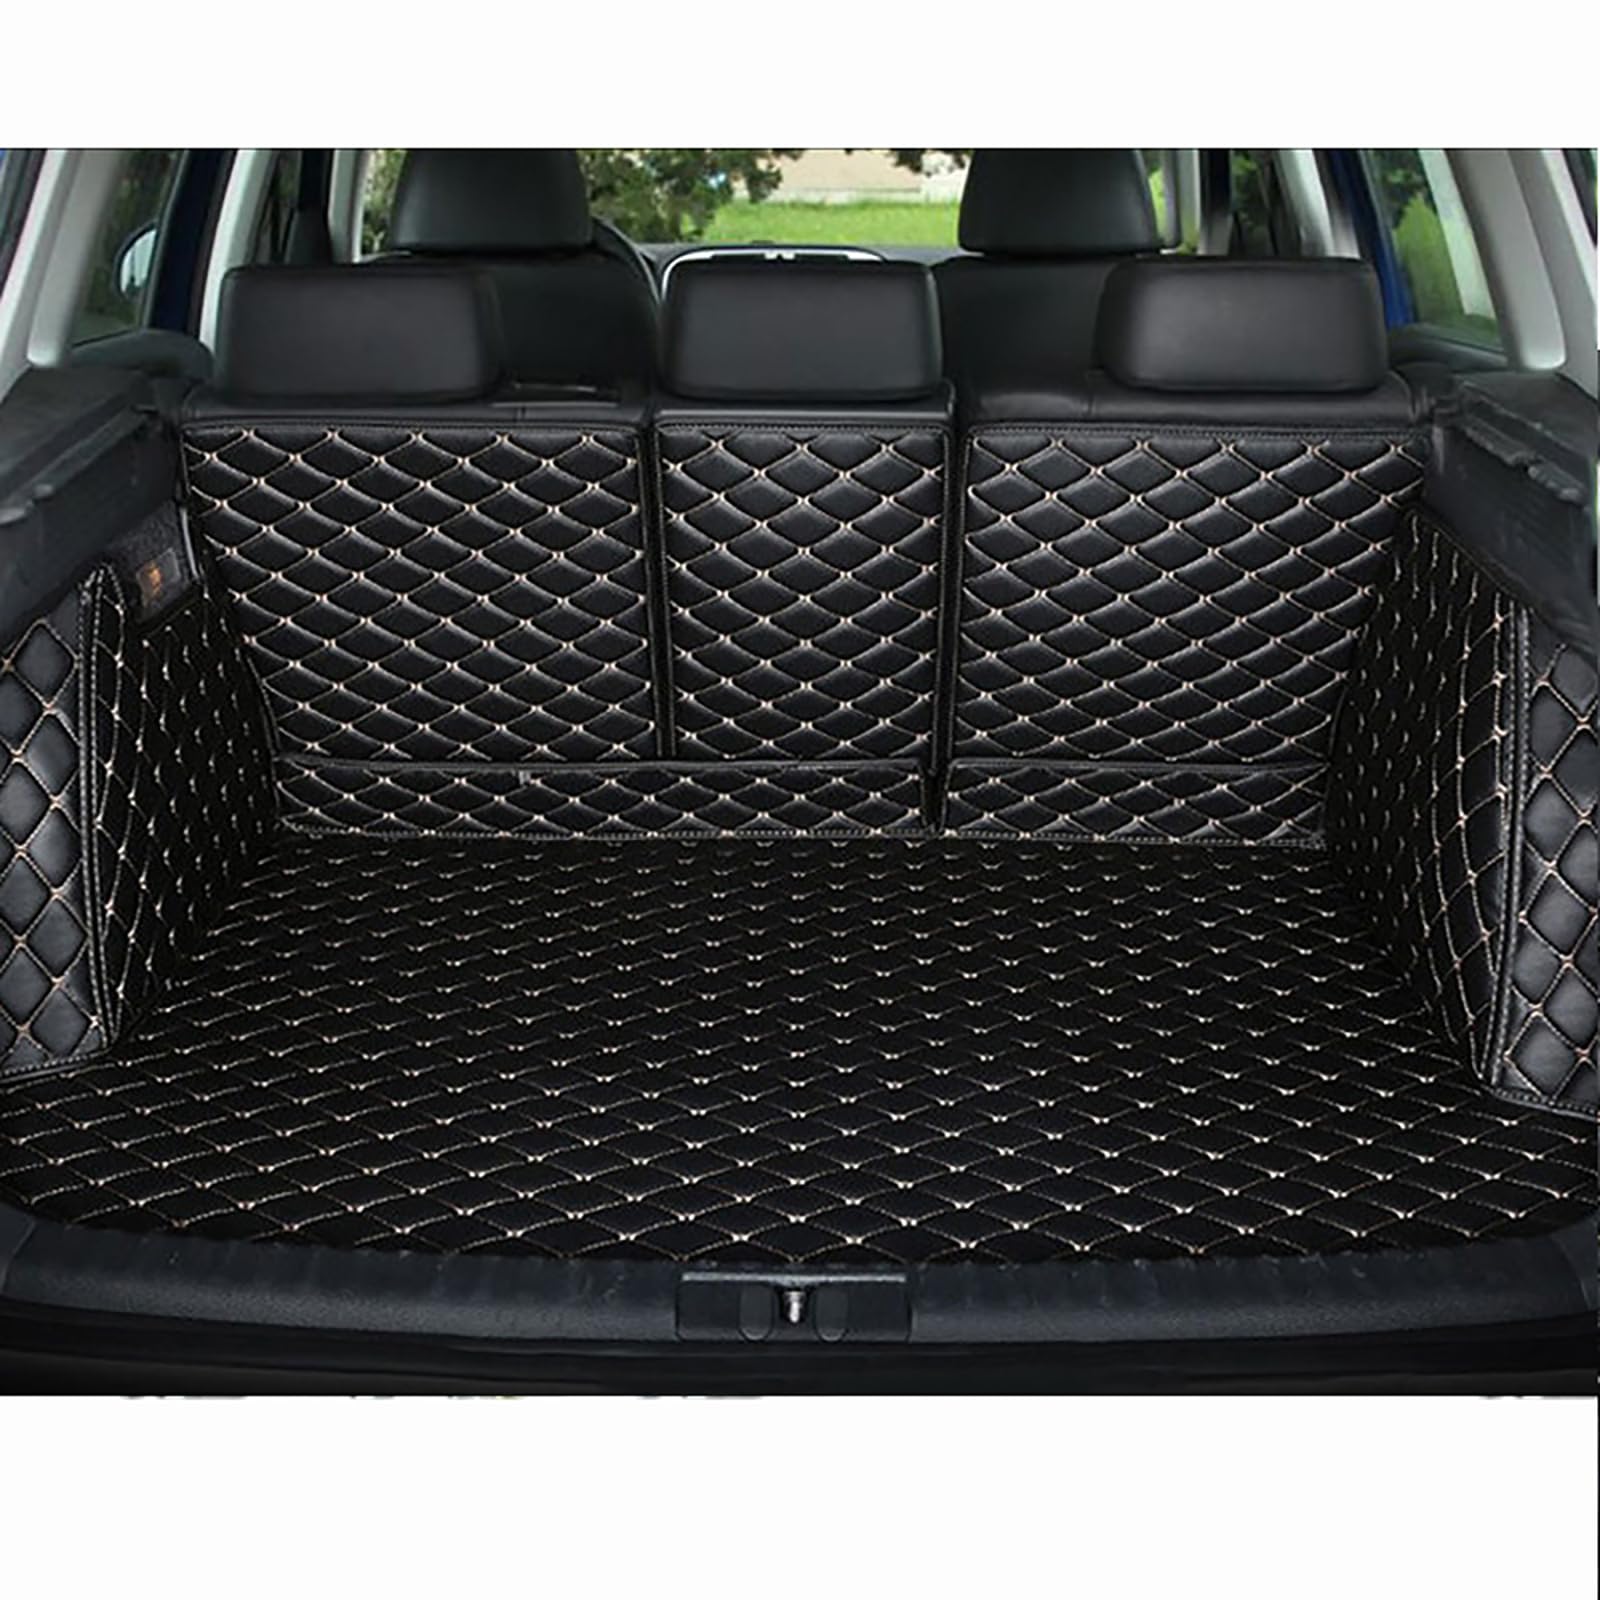 Kofferraum Schutzmatte für Audi A7 2019 2020 2021 2022 2023, Kofferraummatte rutschfest Kofferraumschutz Autoteile,Black von YWDGFC